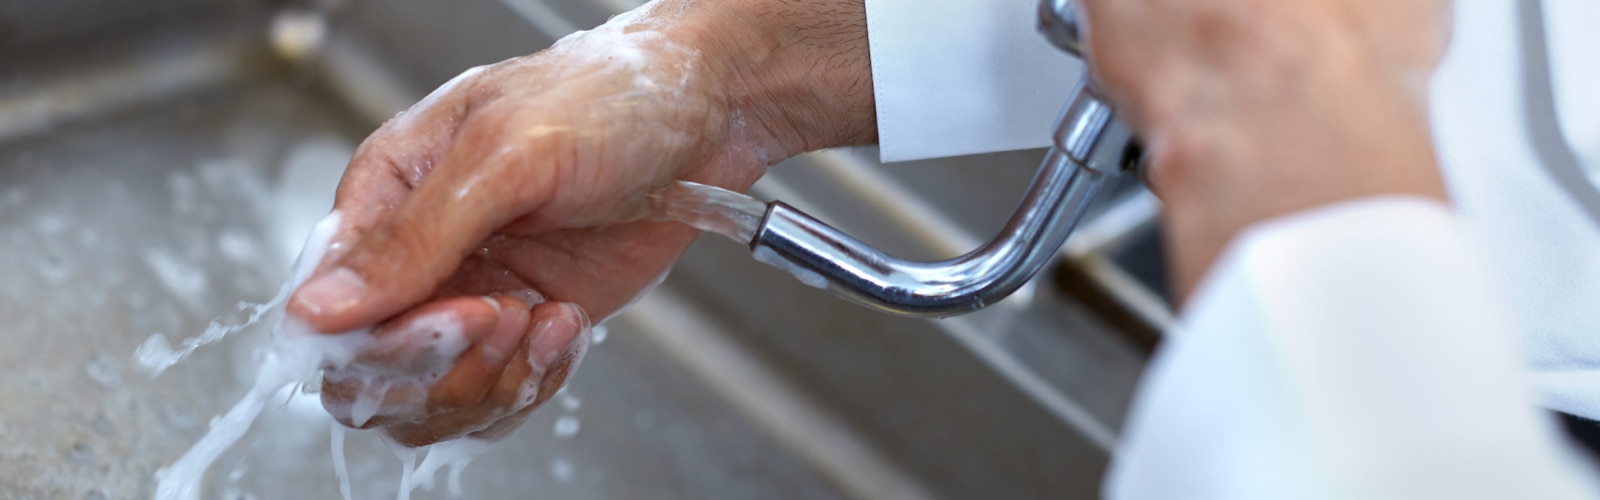 Händewaschen in Restaurants und Gastronomiebetrieben